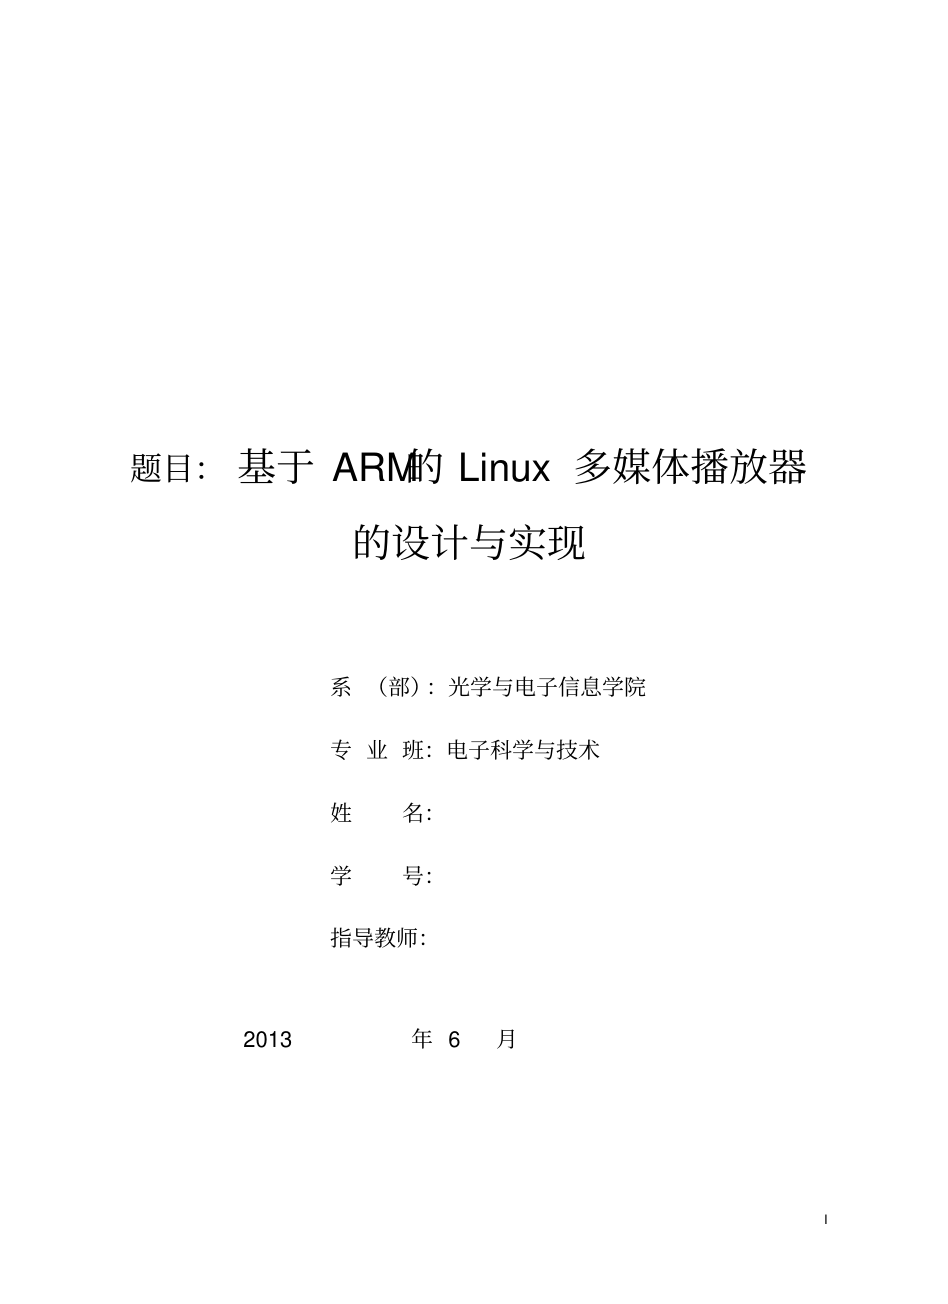 基于arm的linux多媒体播放器mplayer的设计与实现_毕设论文_1.png